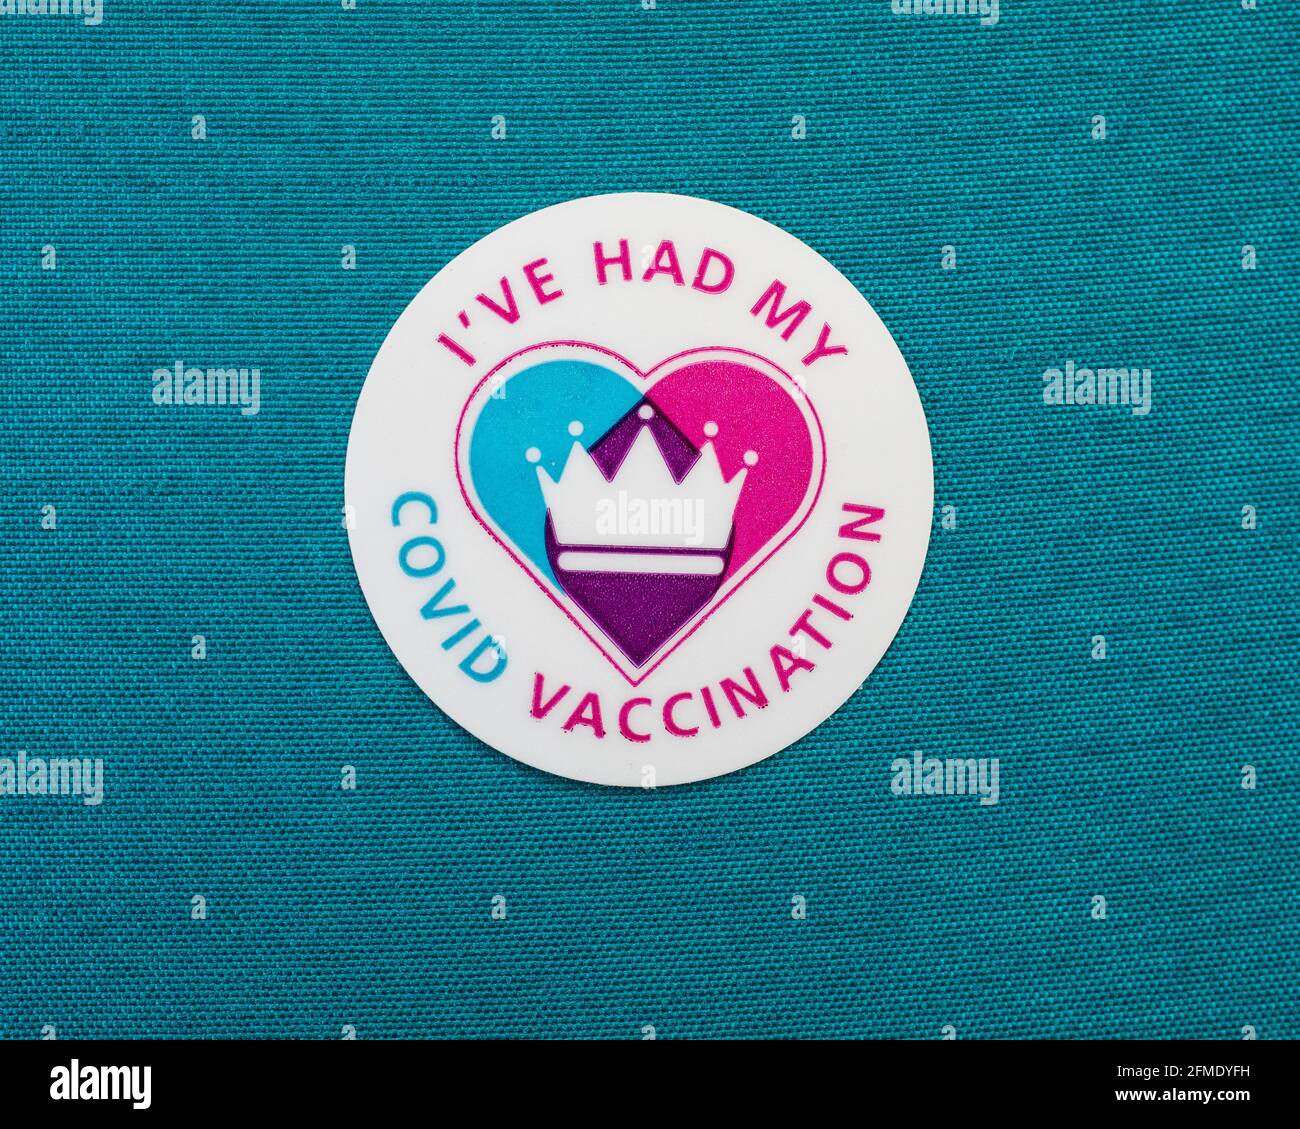 Londra, UK - 25 Aprile 2021: Primo piano di un adesivo di vaccinazione di Ive Had My Covid attaccato su un materiale colorato di teal. Foto Stock